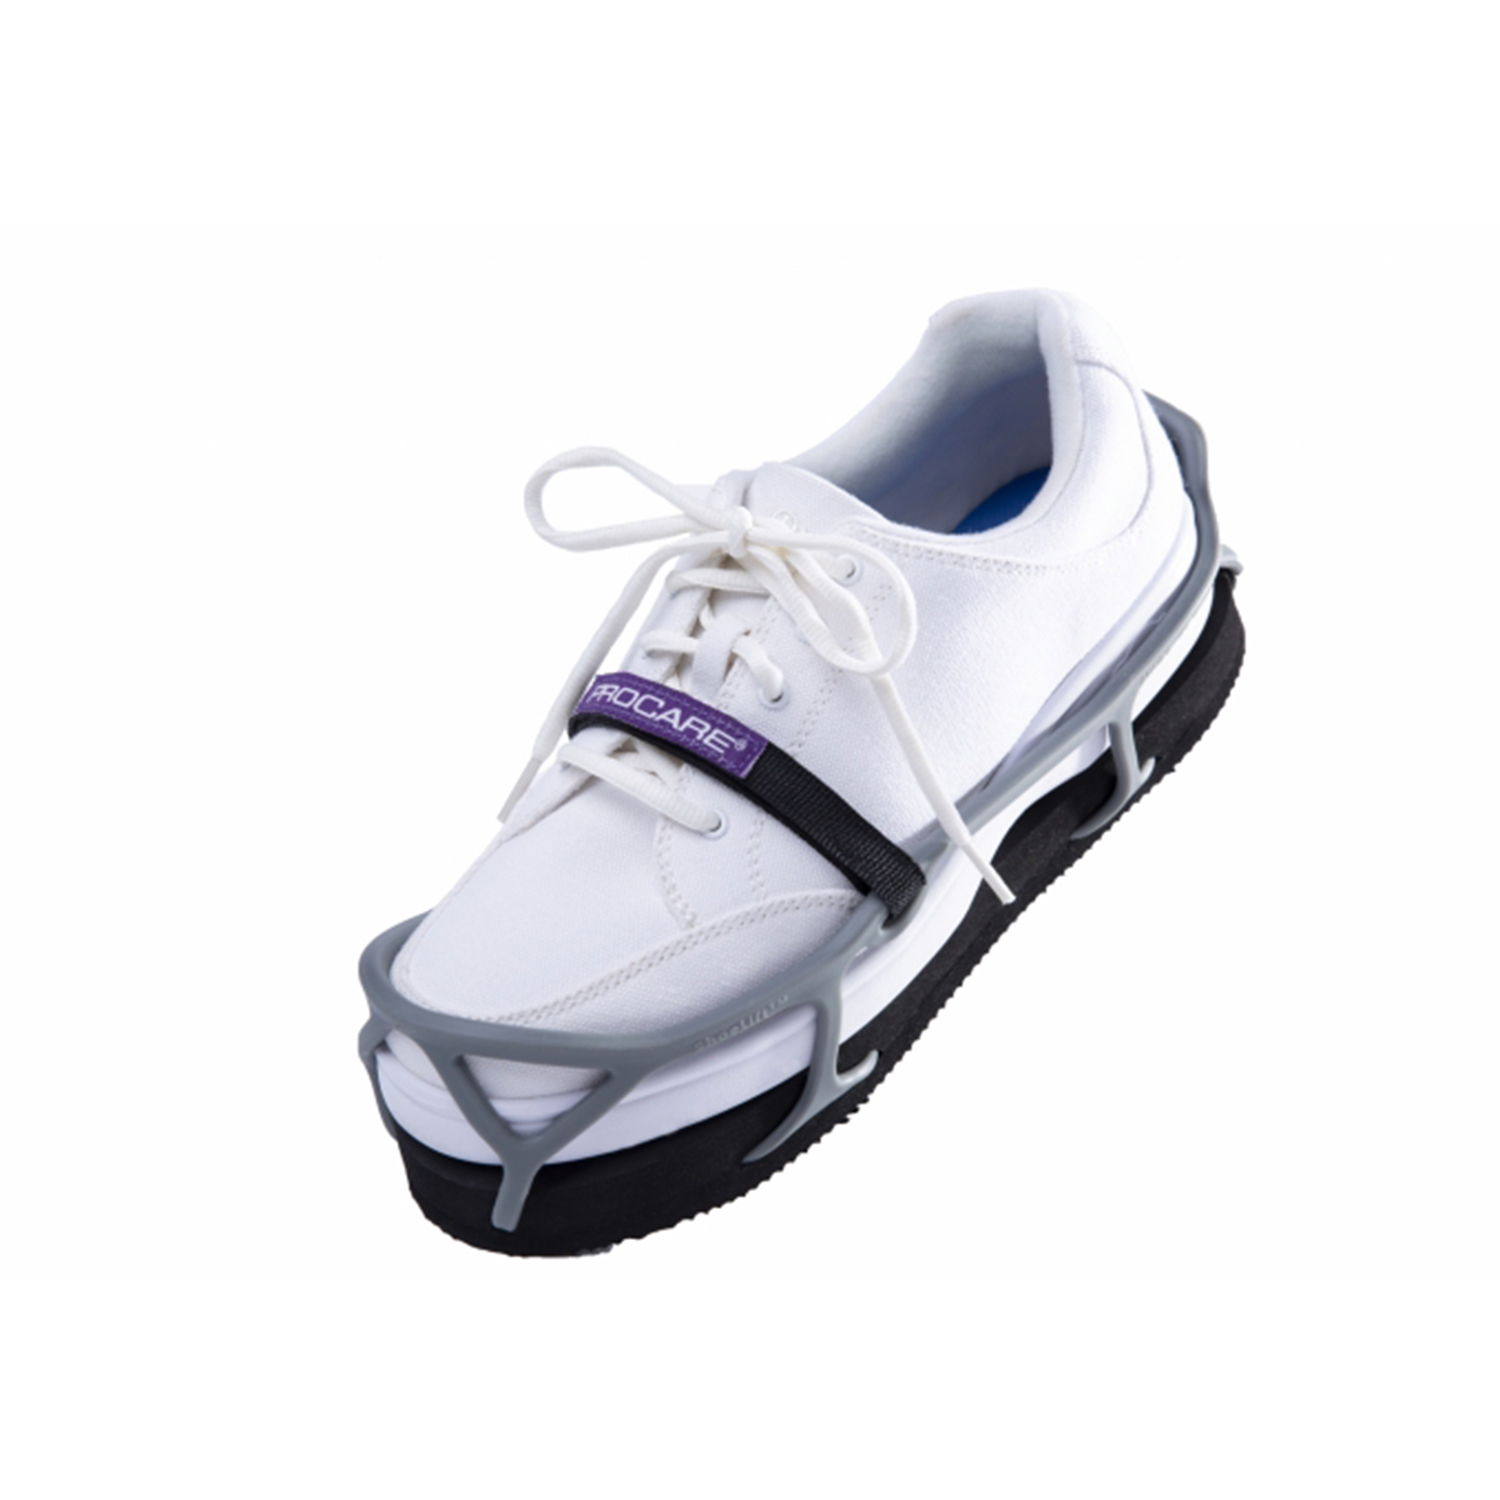 Zusatzbild PROCARE® Shoelift™ mit Schuh, Höhenausgleichssohle 